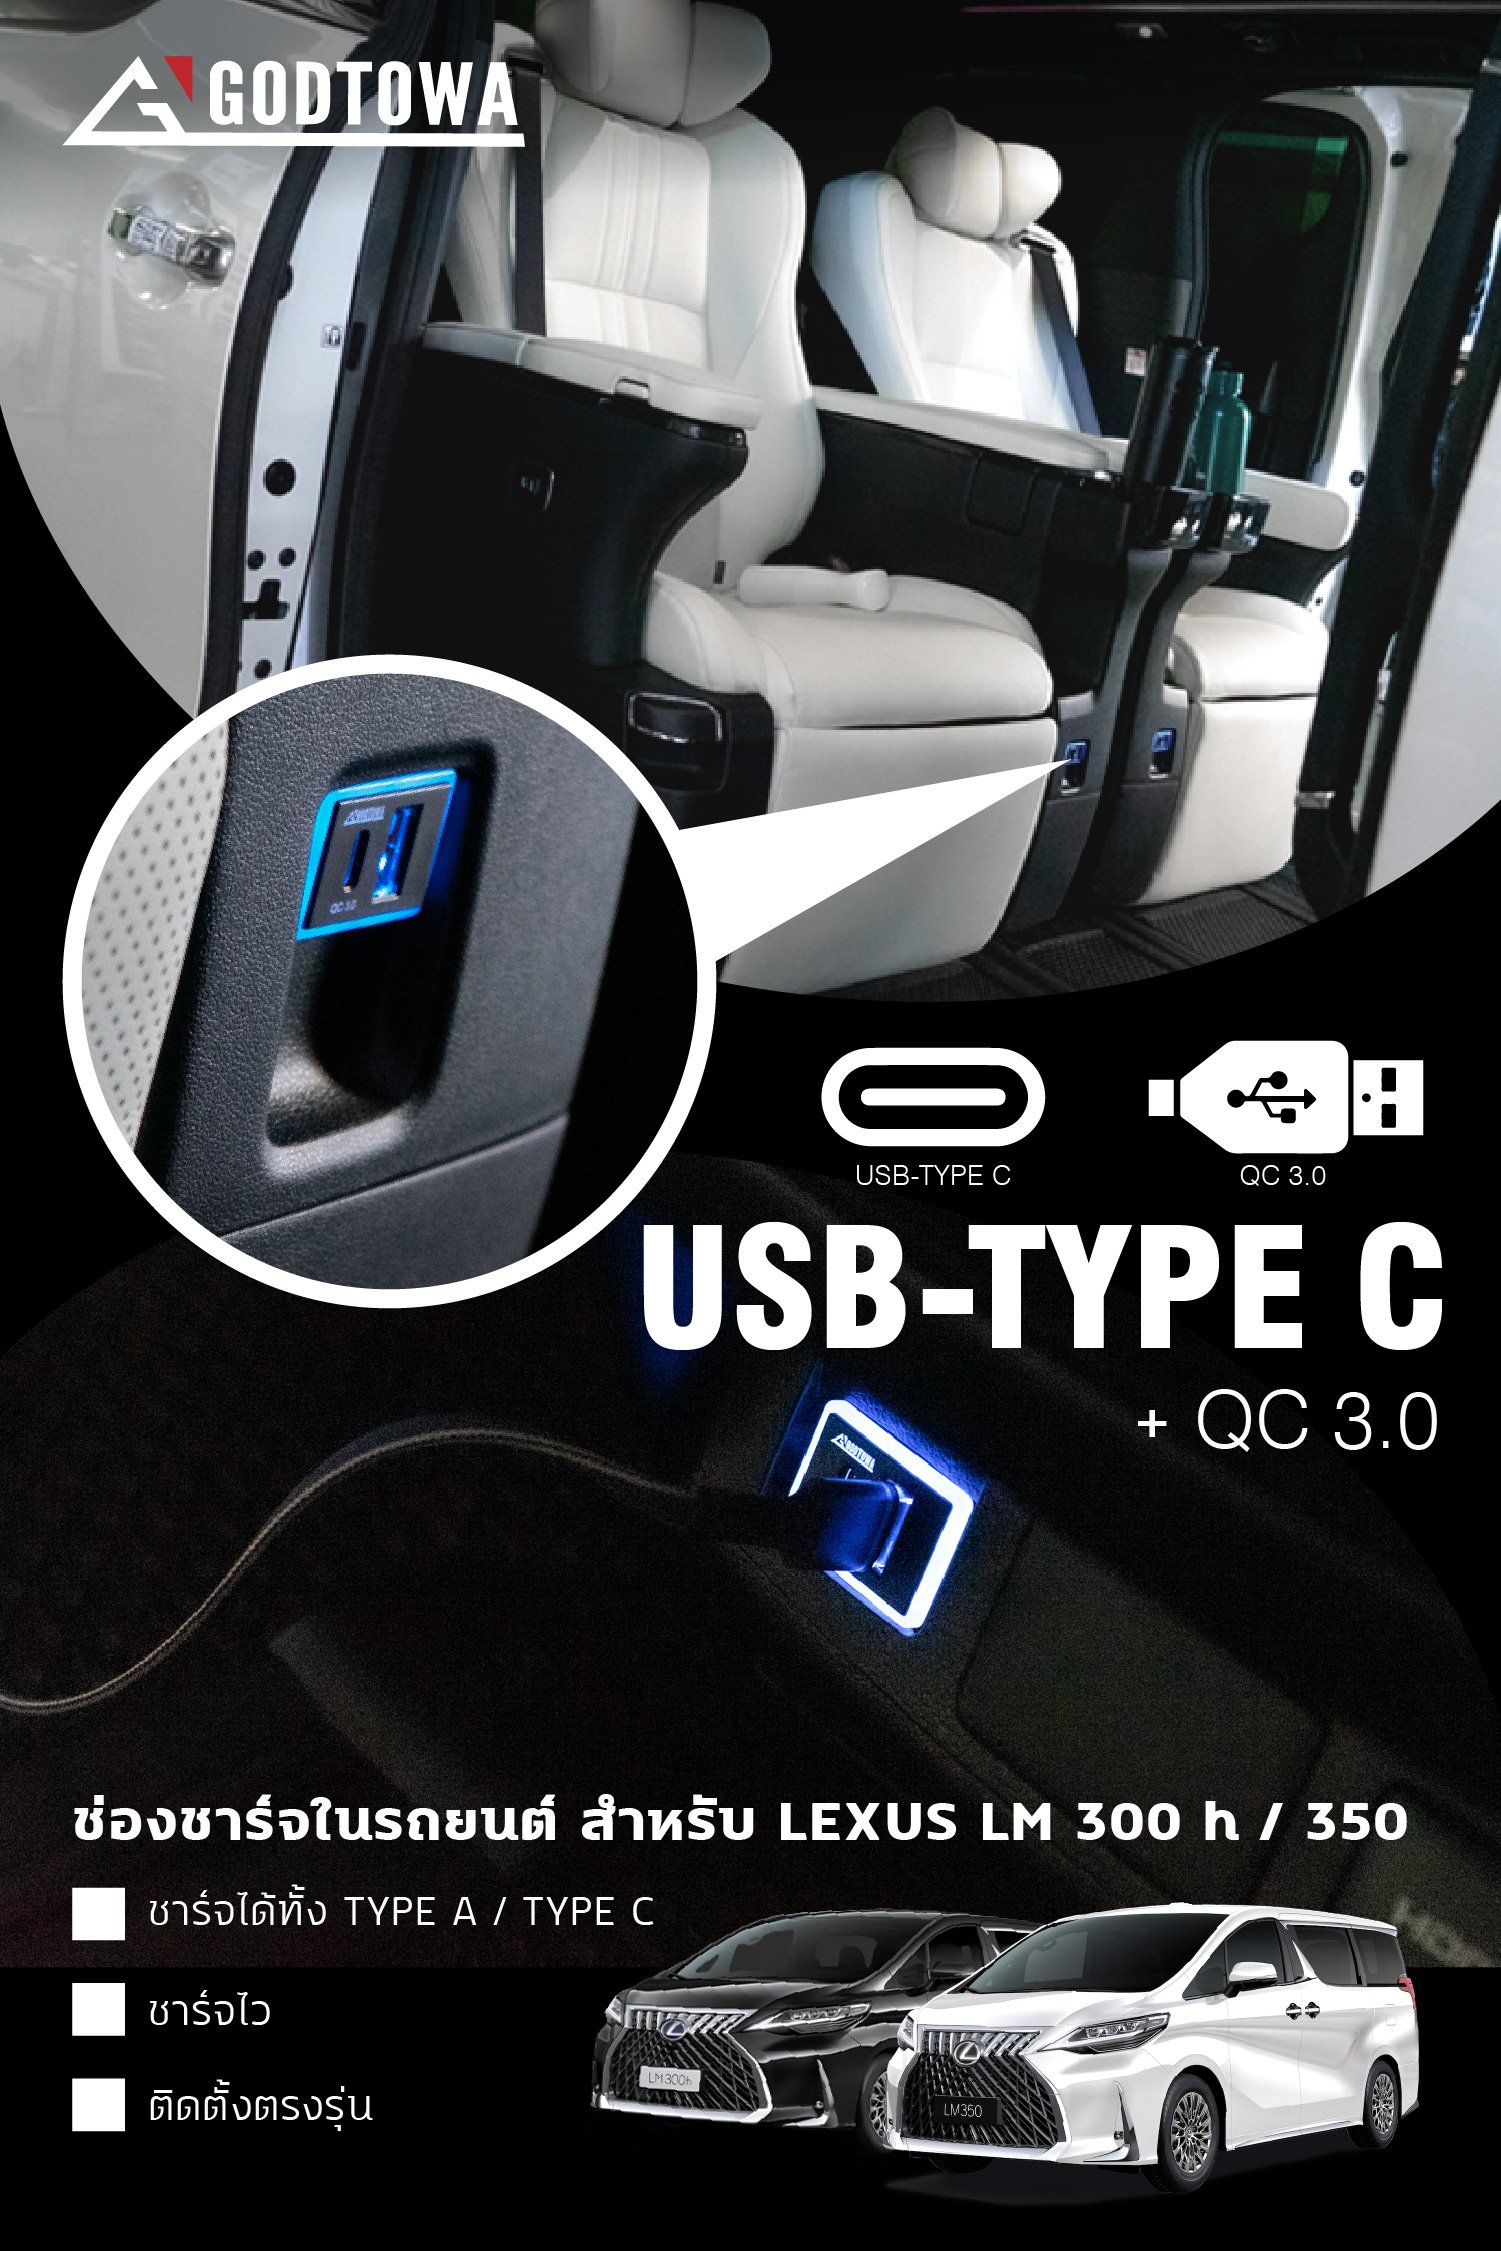 ช่องชาร์จ USB Quick Charge 3.0 Type C ตรงเบาะมิ้กกี้เมาส์ GODTOWA USB CHARGER สำหรับรถยนต์ LEXUS LM 300h / 350